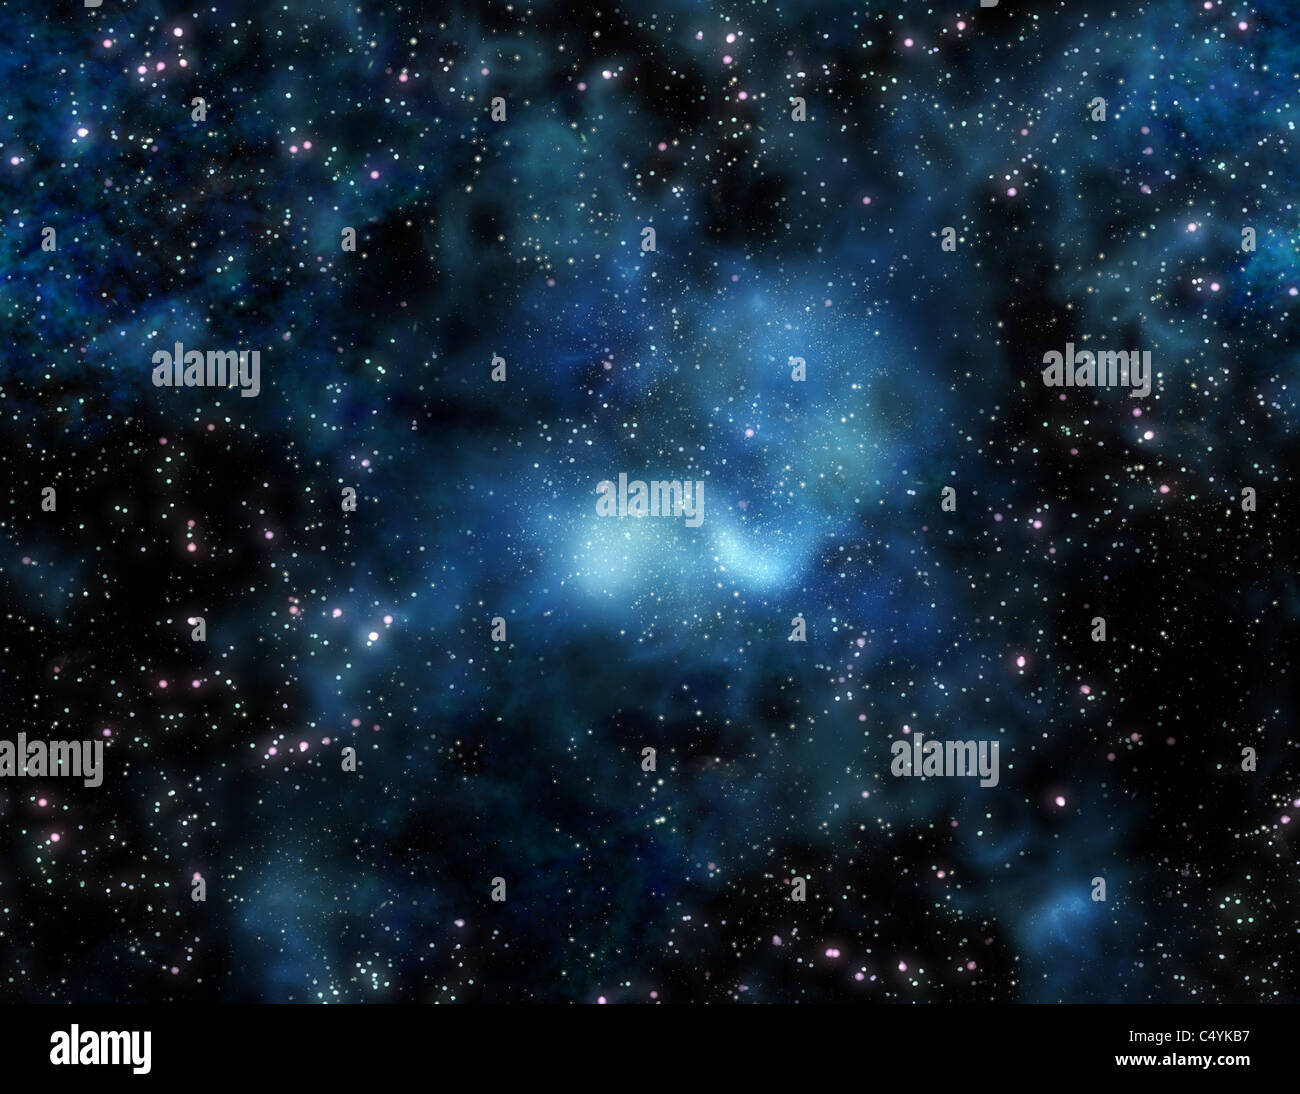 Immagine di stelle e nuvole nebulosa nello spazio profondo Foto Stock